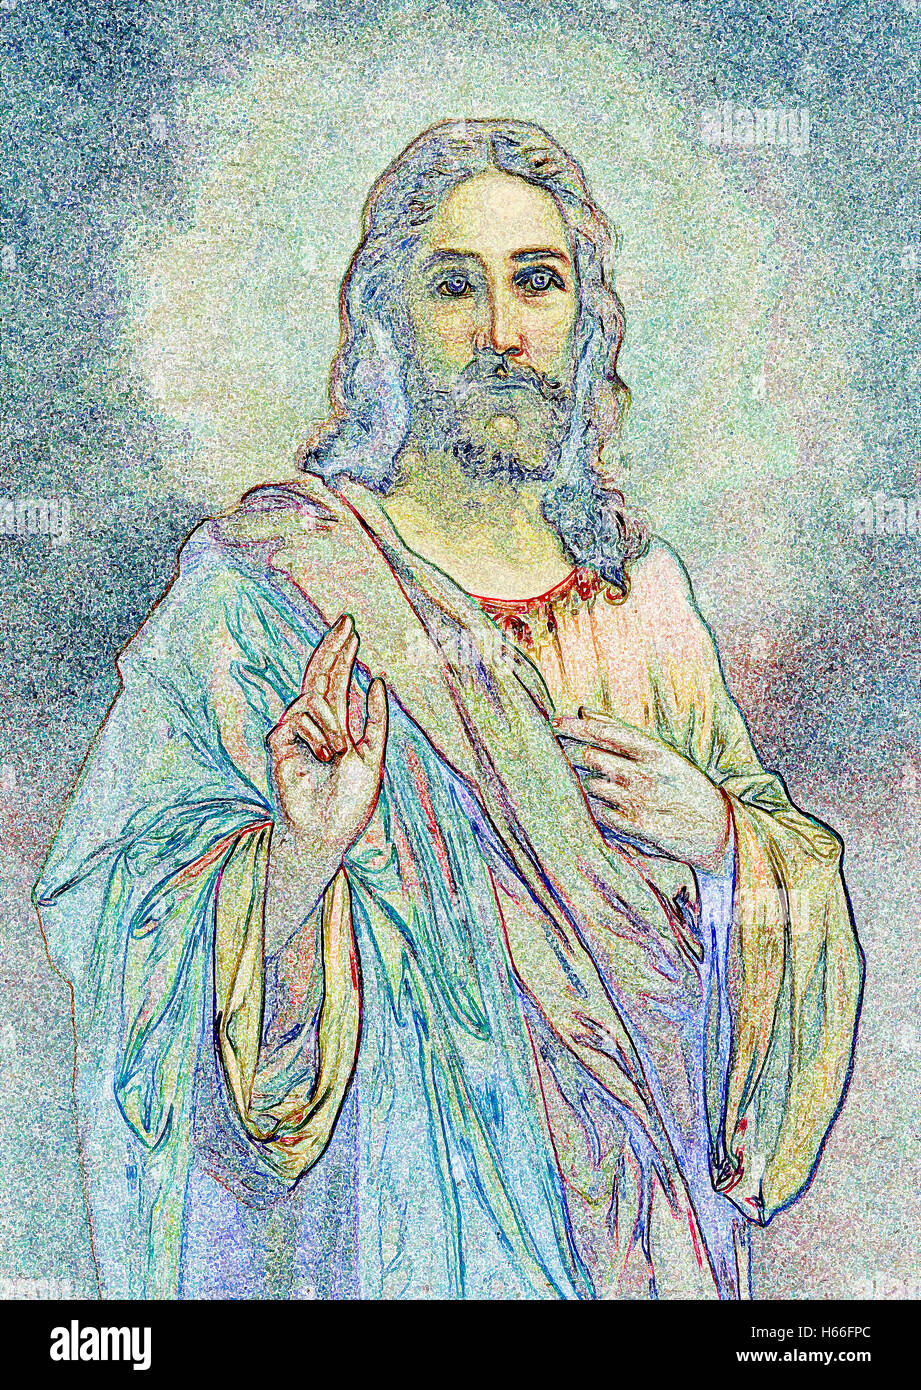 The ilustration of typical catholic image of Jesus Christ Stock Photo